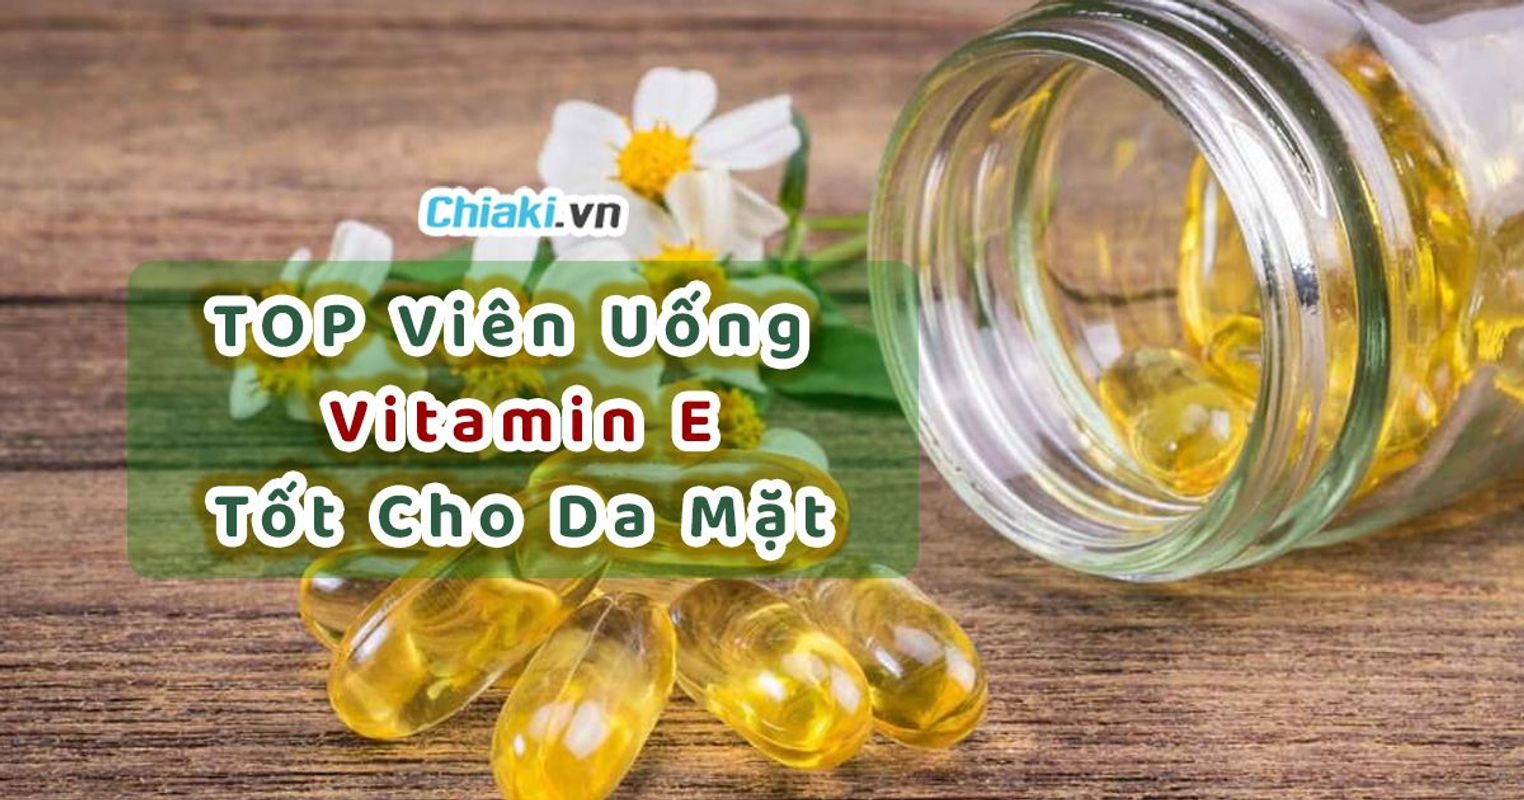 Công dụng chính của vitamin E viên là gì?
